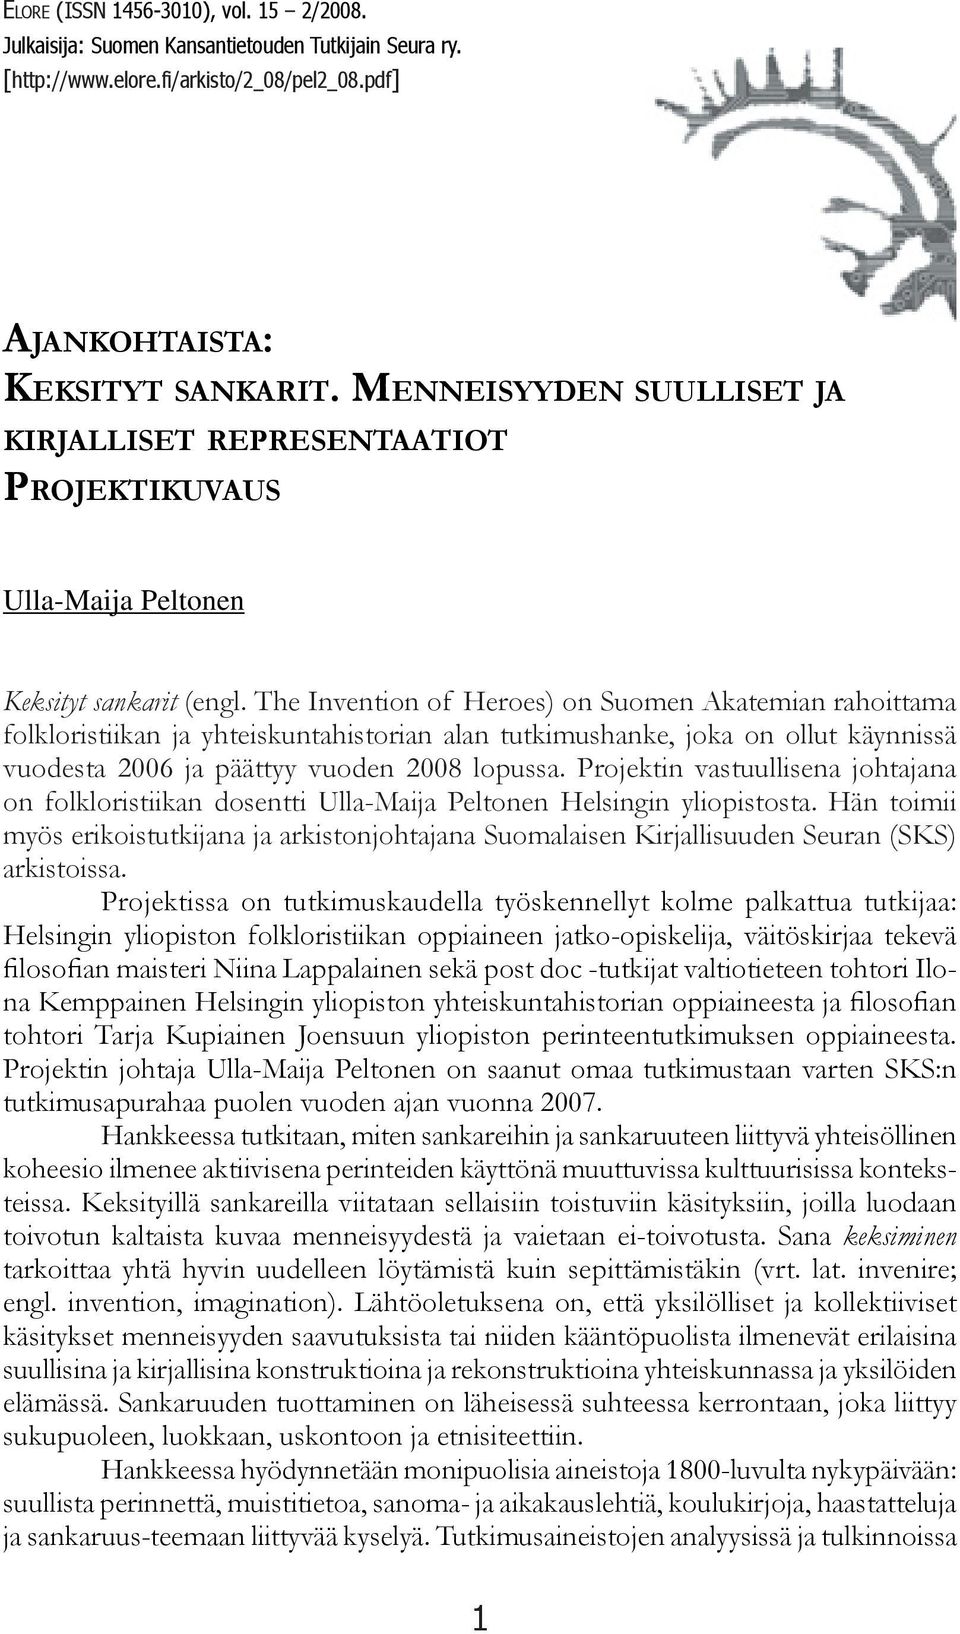 The Invention of Heroes) on Suomen Akatemian rahoittama folkloristiikan ja yhteiskuntahistorian alan tutkimushanke, joka on ollut käynnissä vuodesta 2006 ja päättyy vuoden 2008 lopussa.